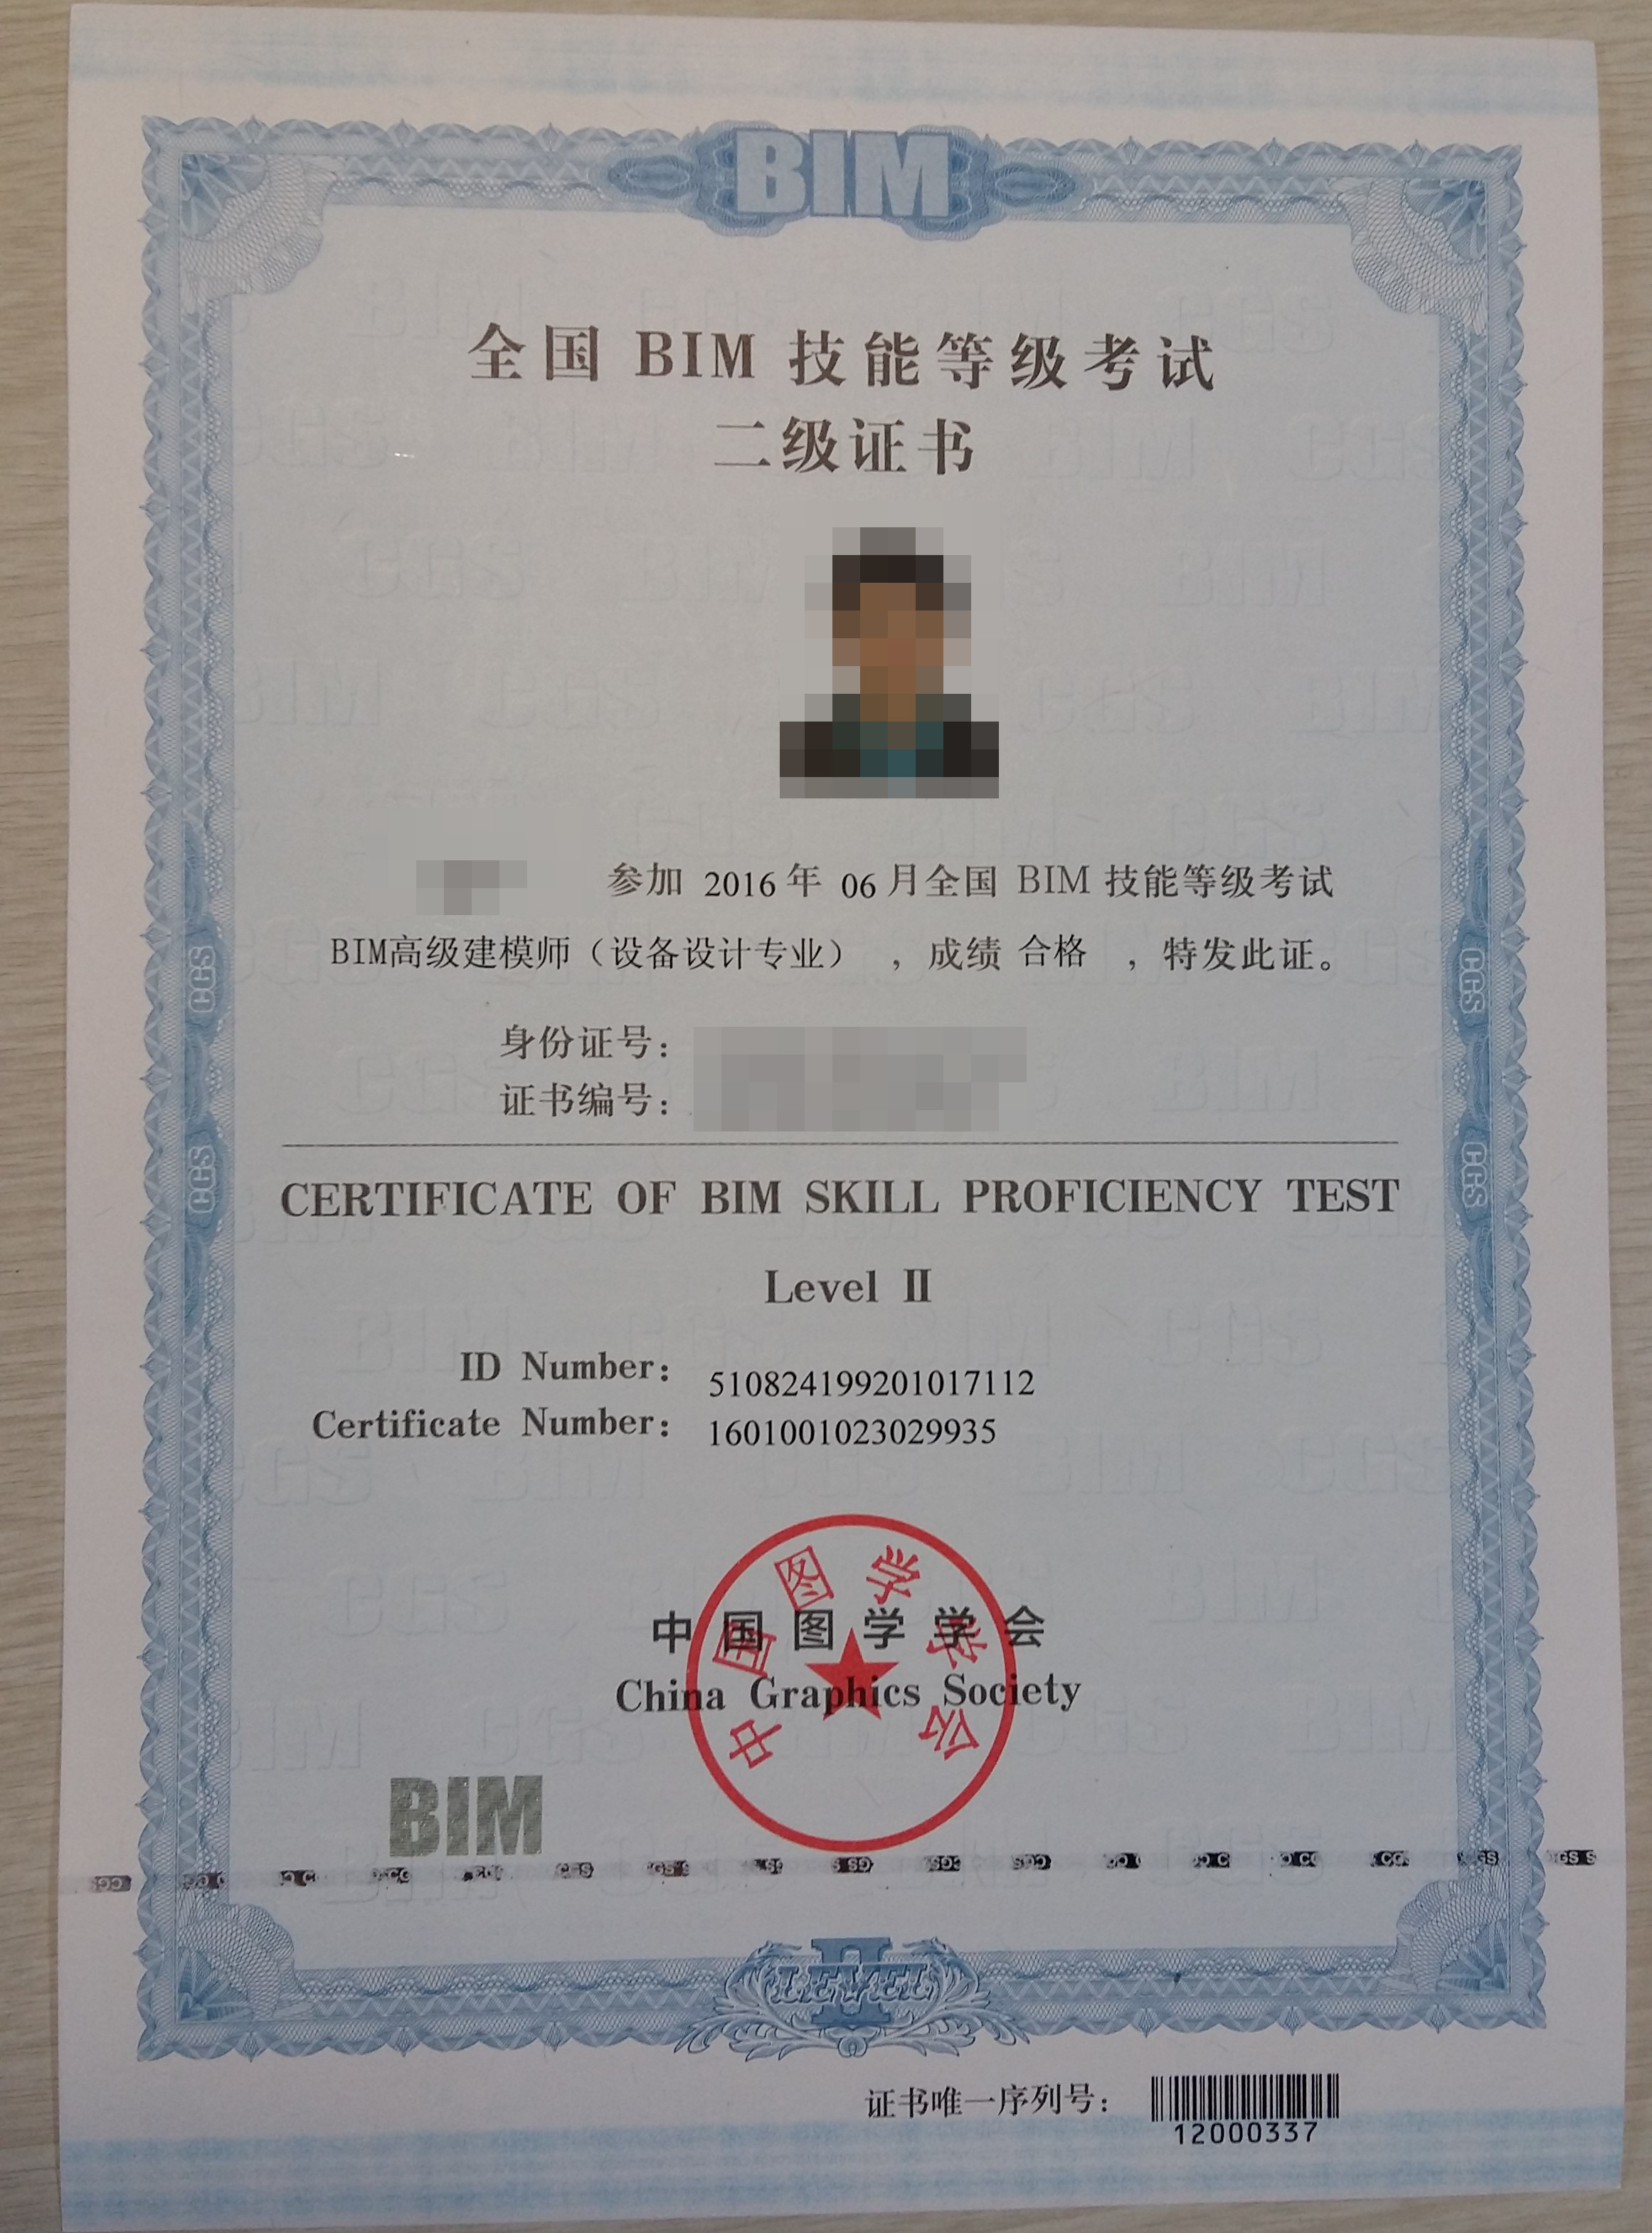 中国图学学会 颁发《全国bim技能等级考试证书》